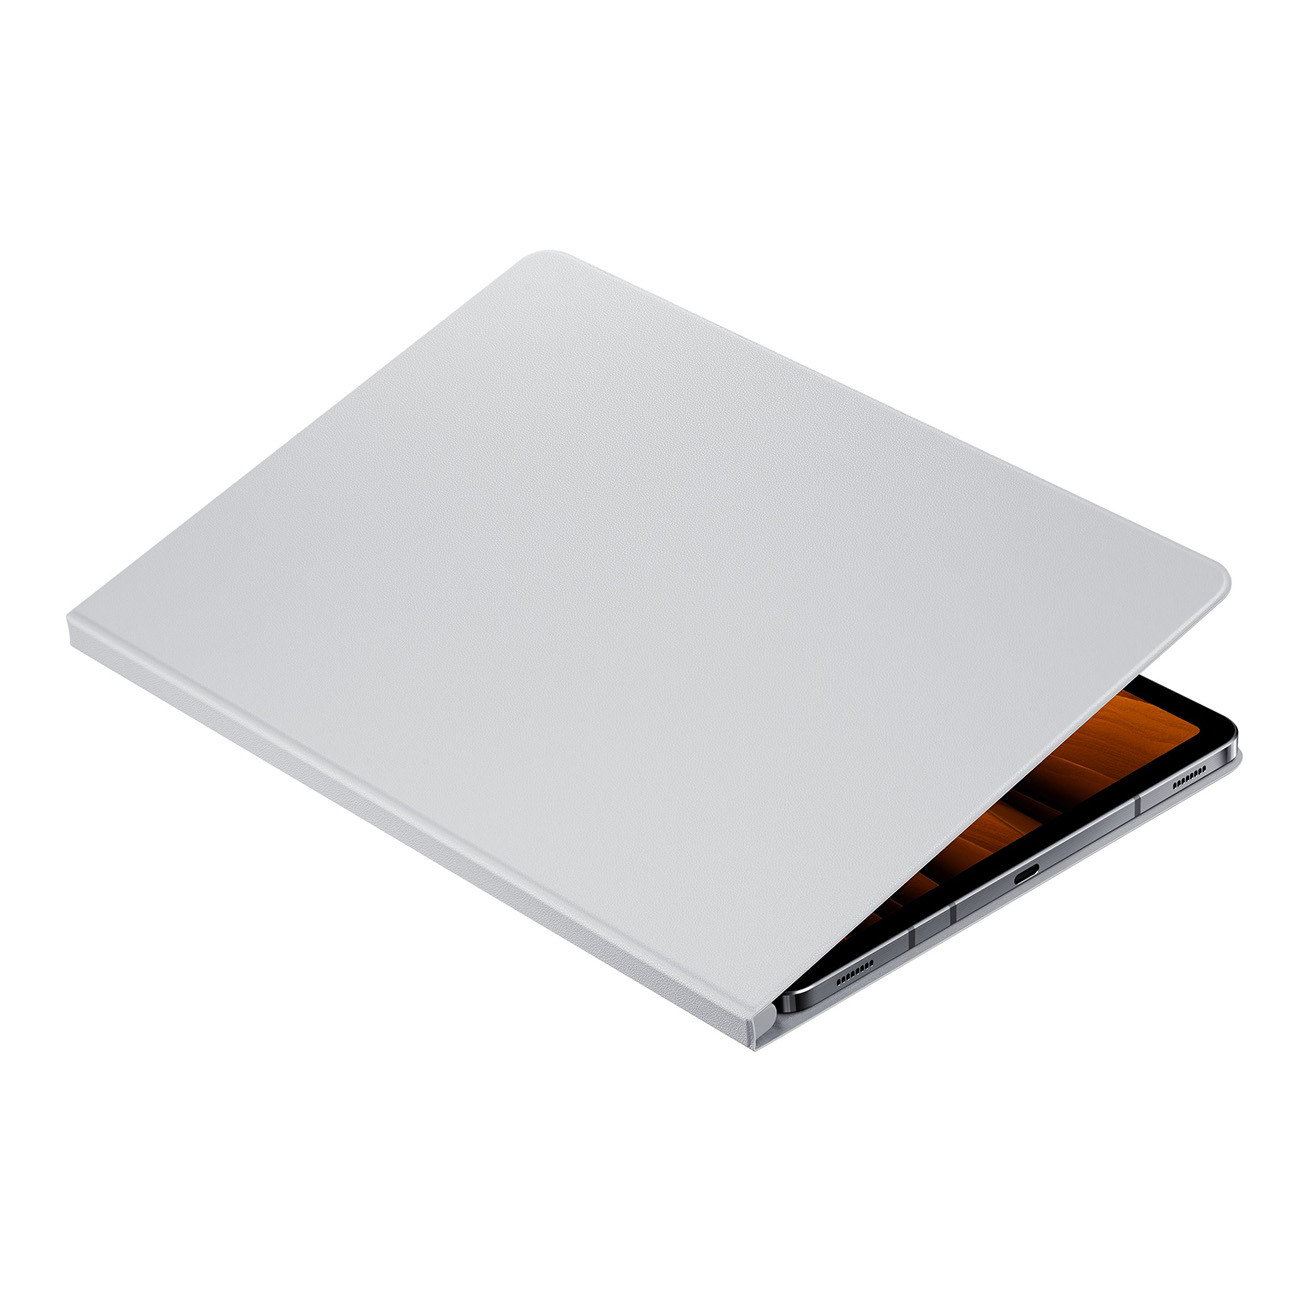 SAMSUNG Book Cover EF-BT870 Tablet Samsung Flip Cover grau für Kunstleder, Case/Cover